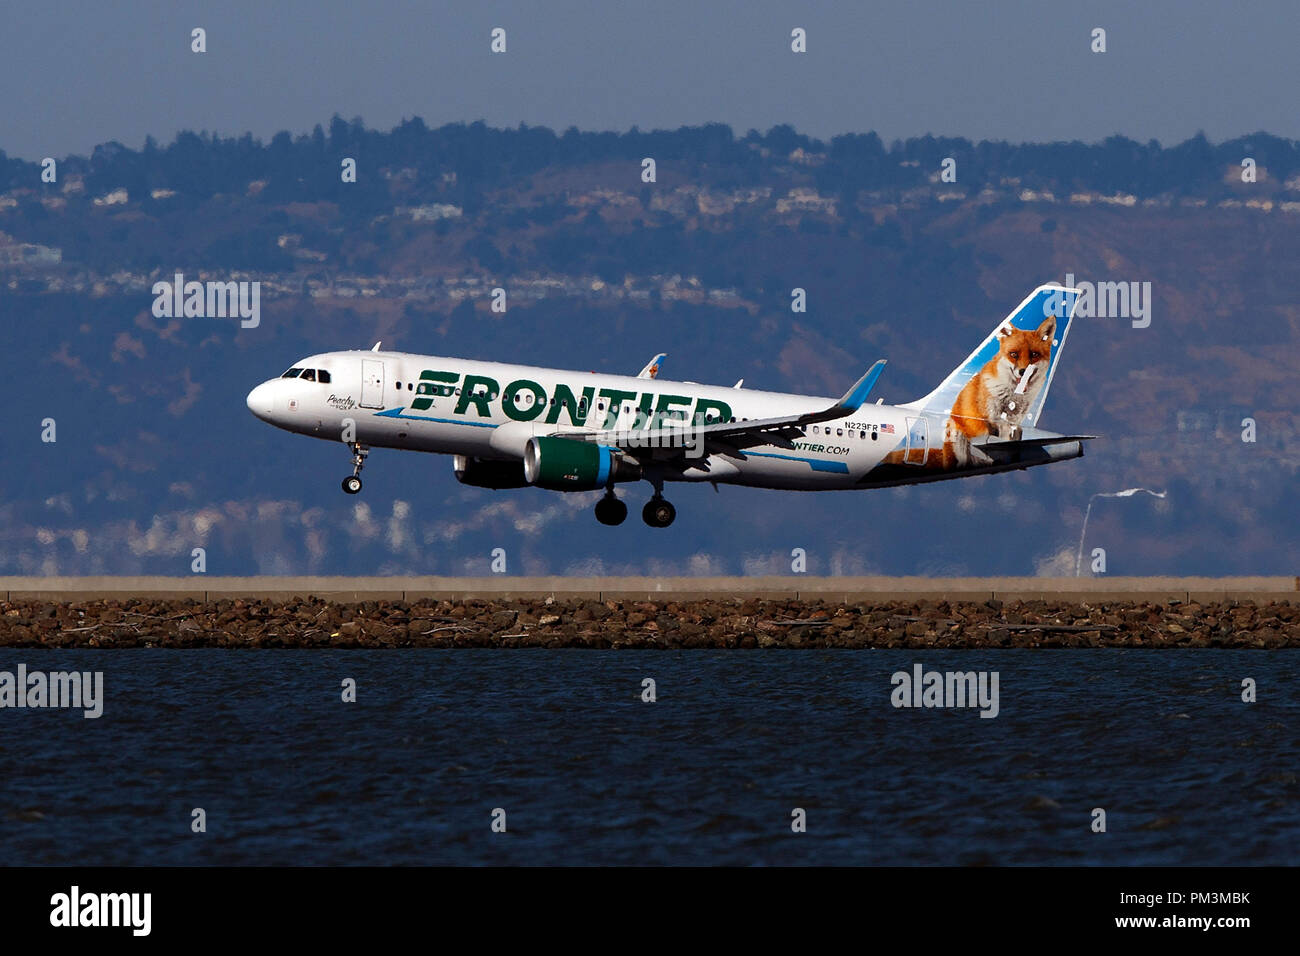 Airbus A 320-214 (N 229 FR) von Frontier Airlines mit dem Pfirsich der Fuchs livery Landung am Flughafen San Francisco International (Ksfo), San Francisco, Kalifornien, Vereinigte Staaten von Amerika Stockfoto